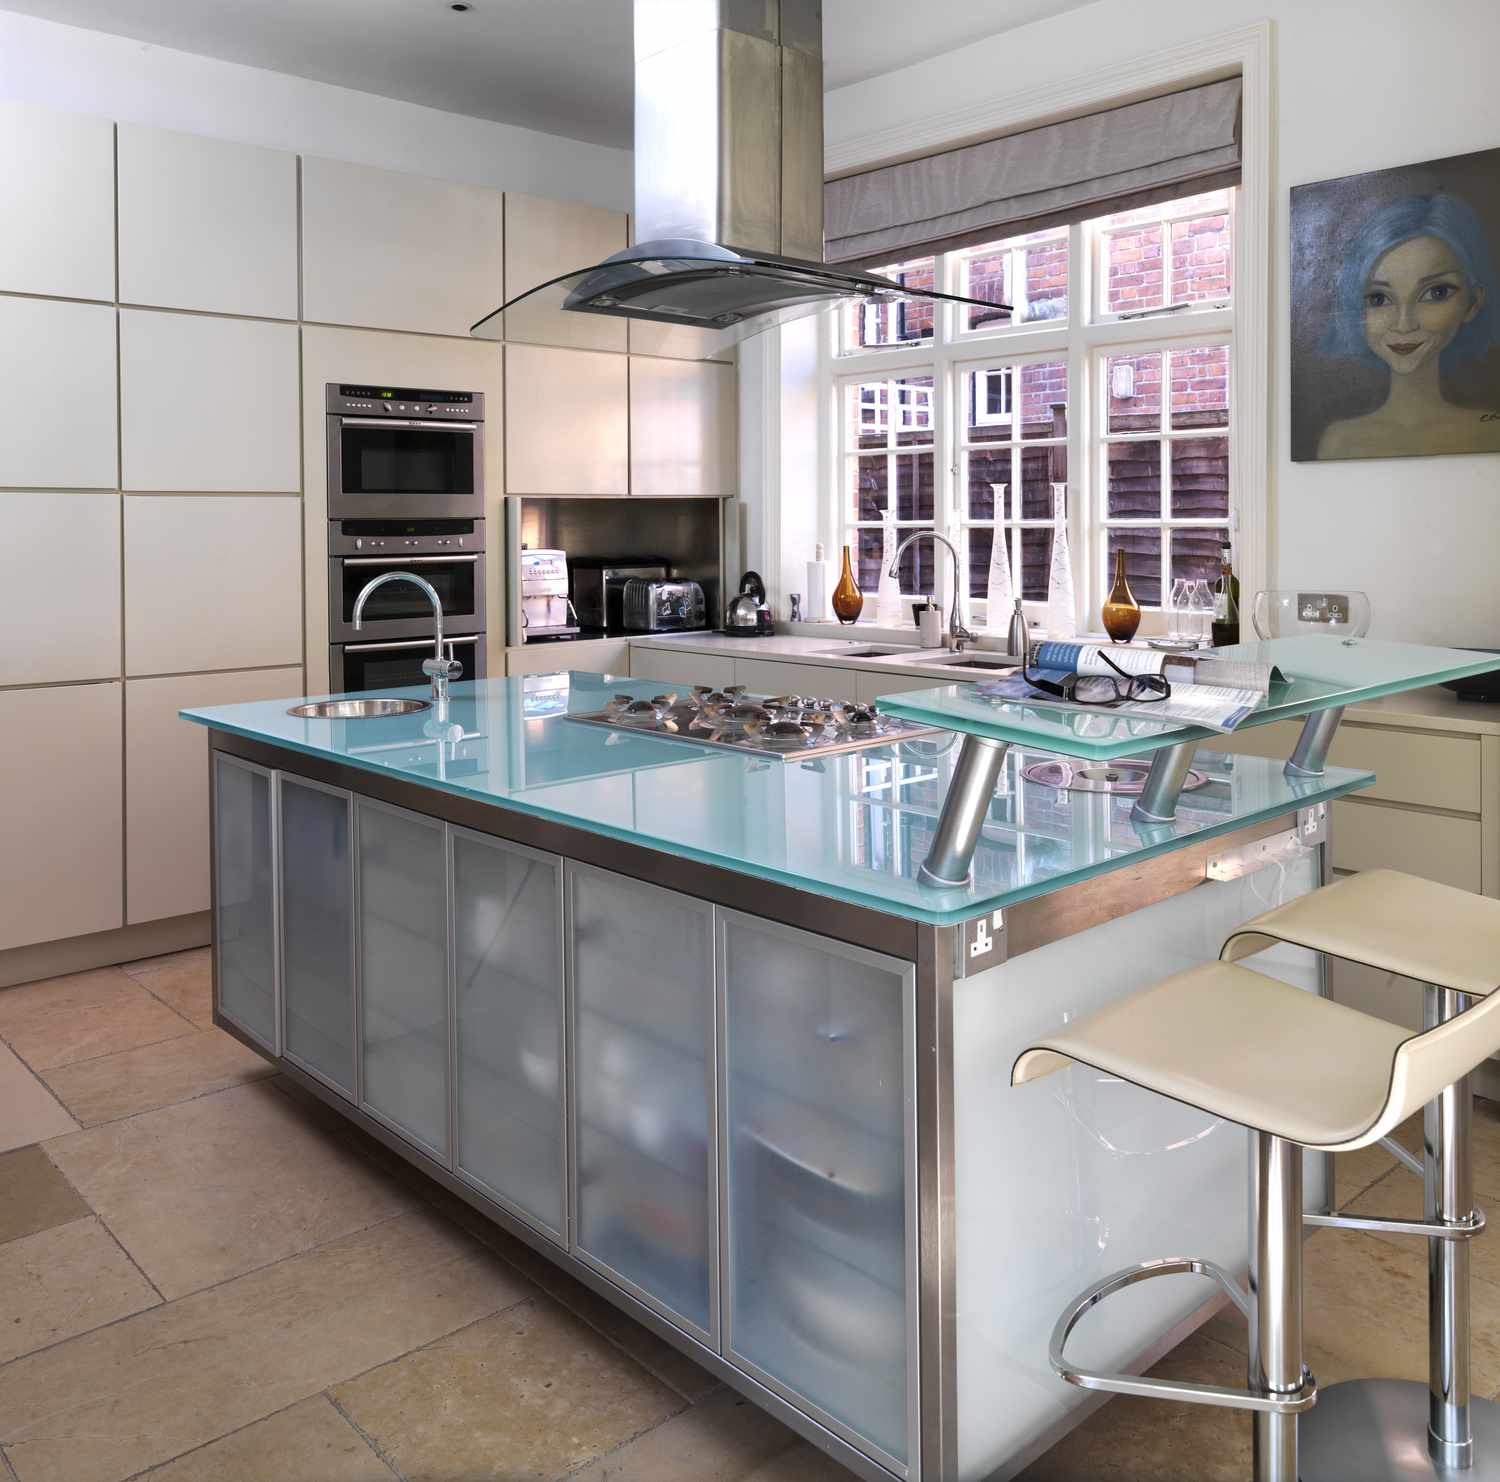 Barhocker an der Frühstücksbar in einer modernen Küche, Haus in Großbritannien